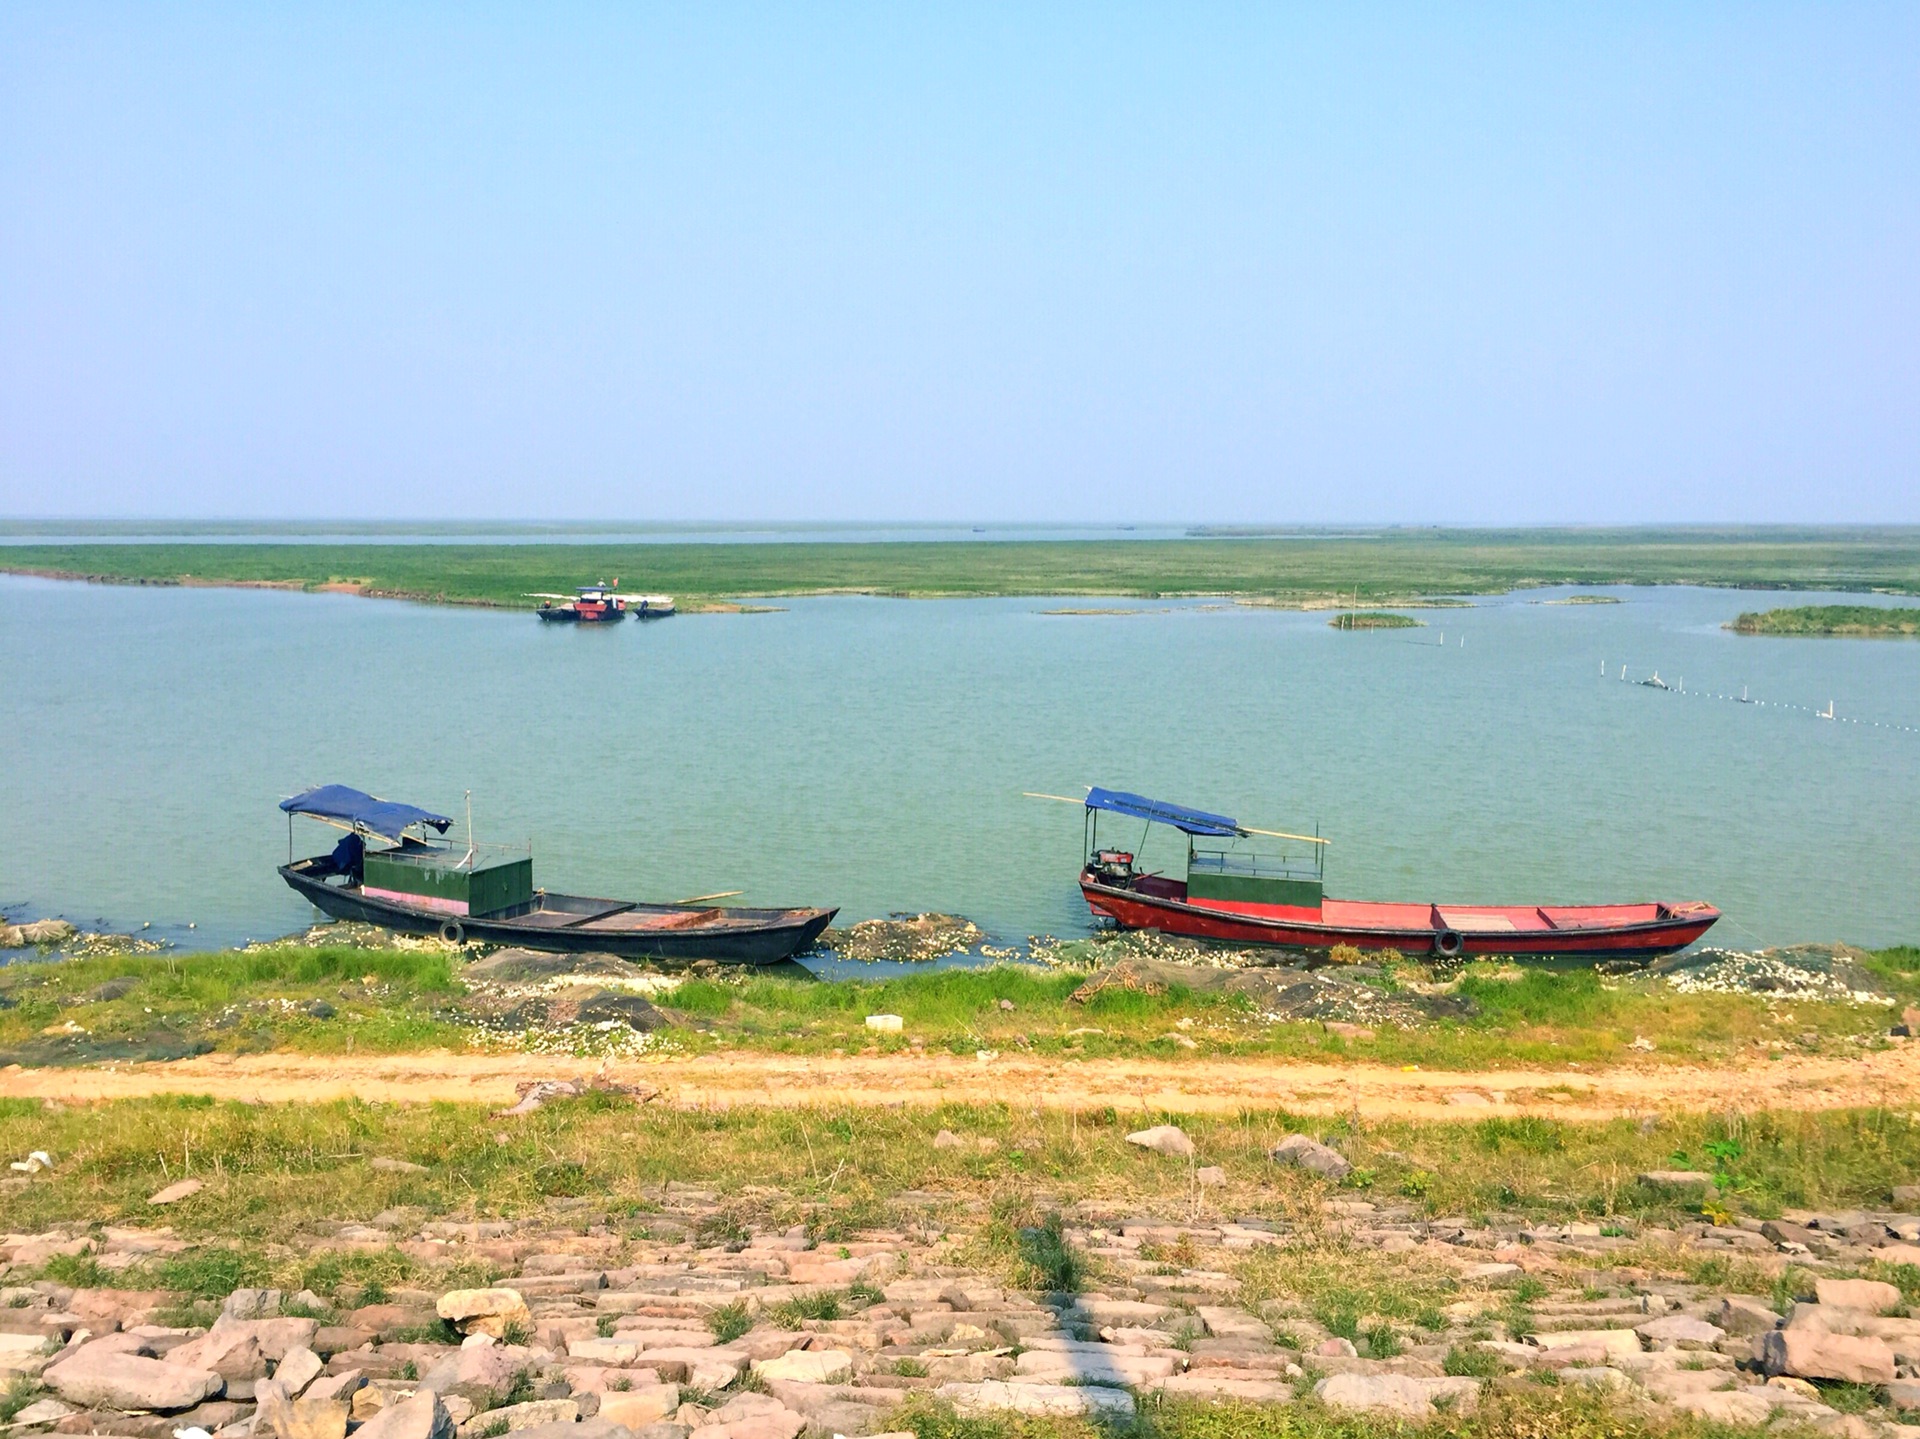 鄱阳湖的蓼子花海(手机拍摄),鄱阳湖旅游攻略 - 马蜂窝